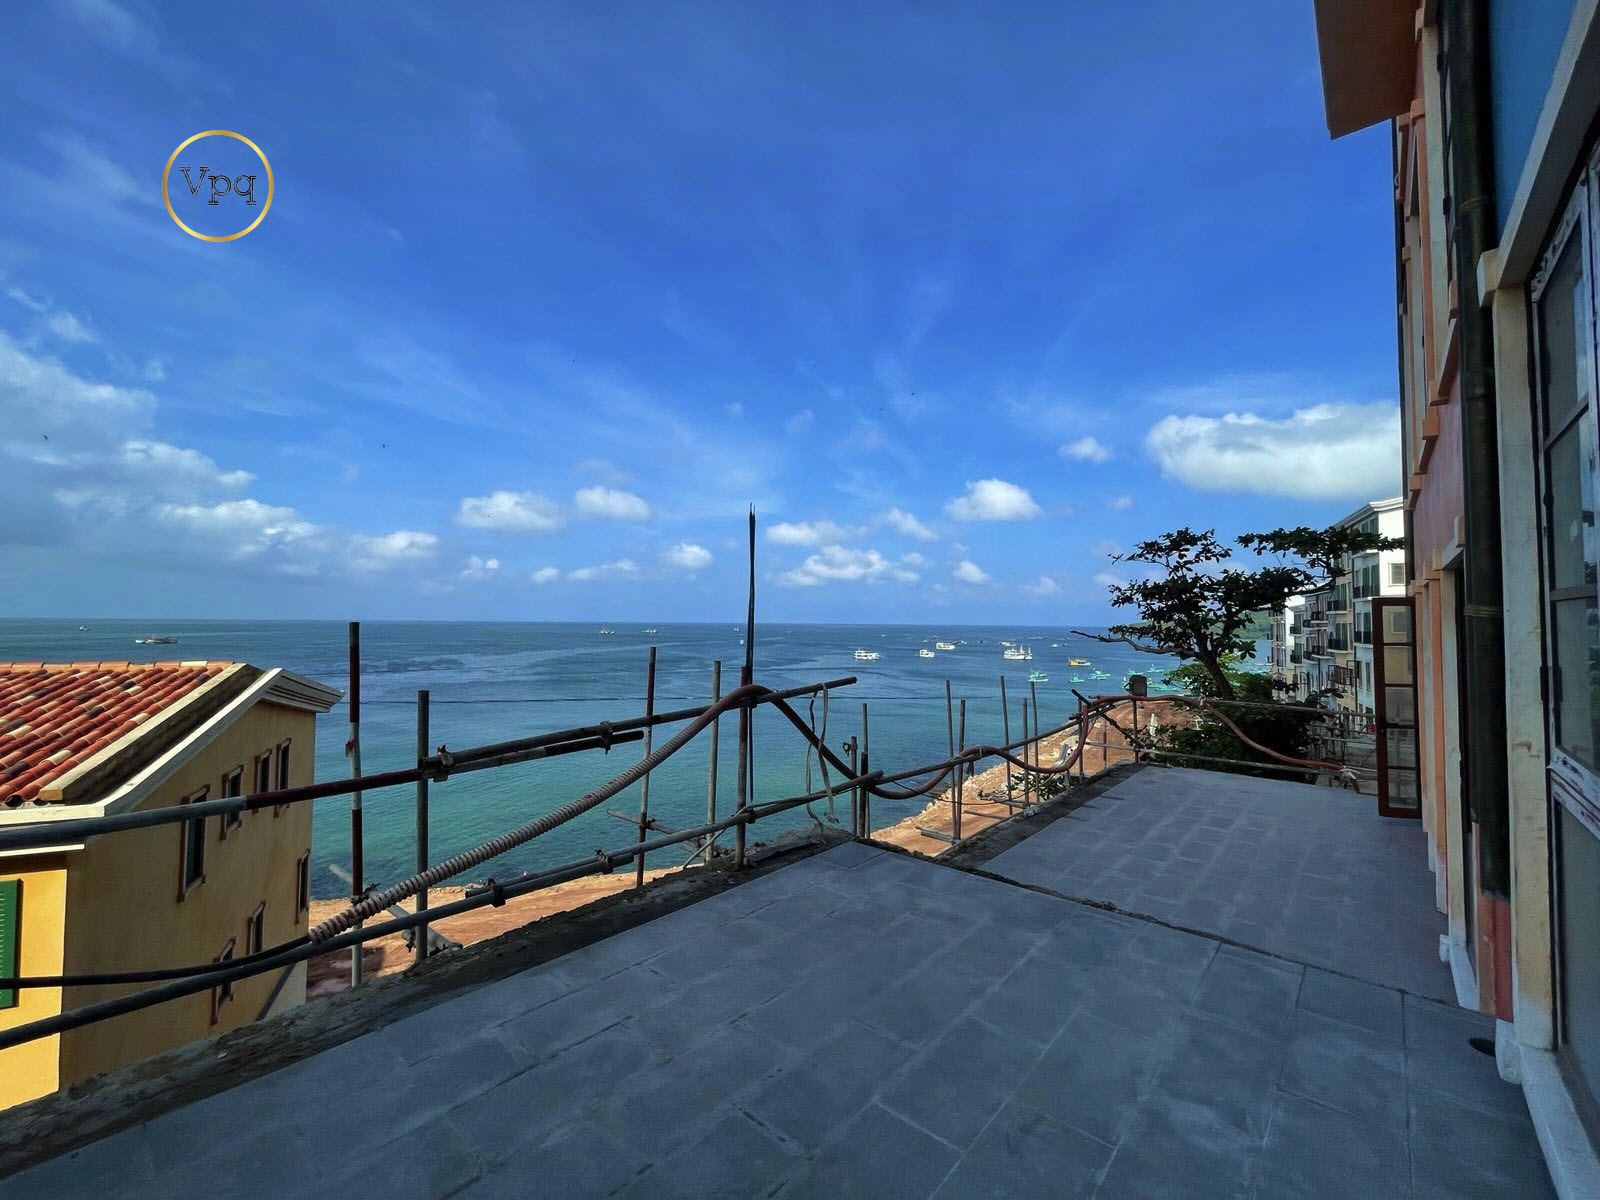 Đặc biệt phần terrace hướng biển có thể làm cà phê, nhà hàng ngắm biển,